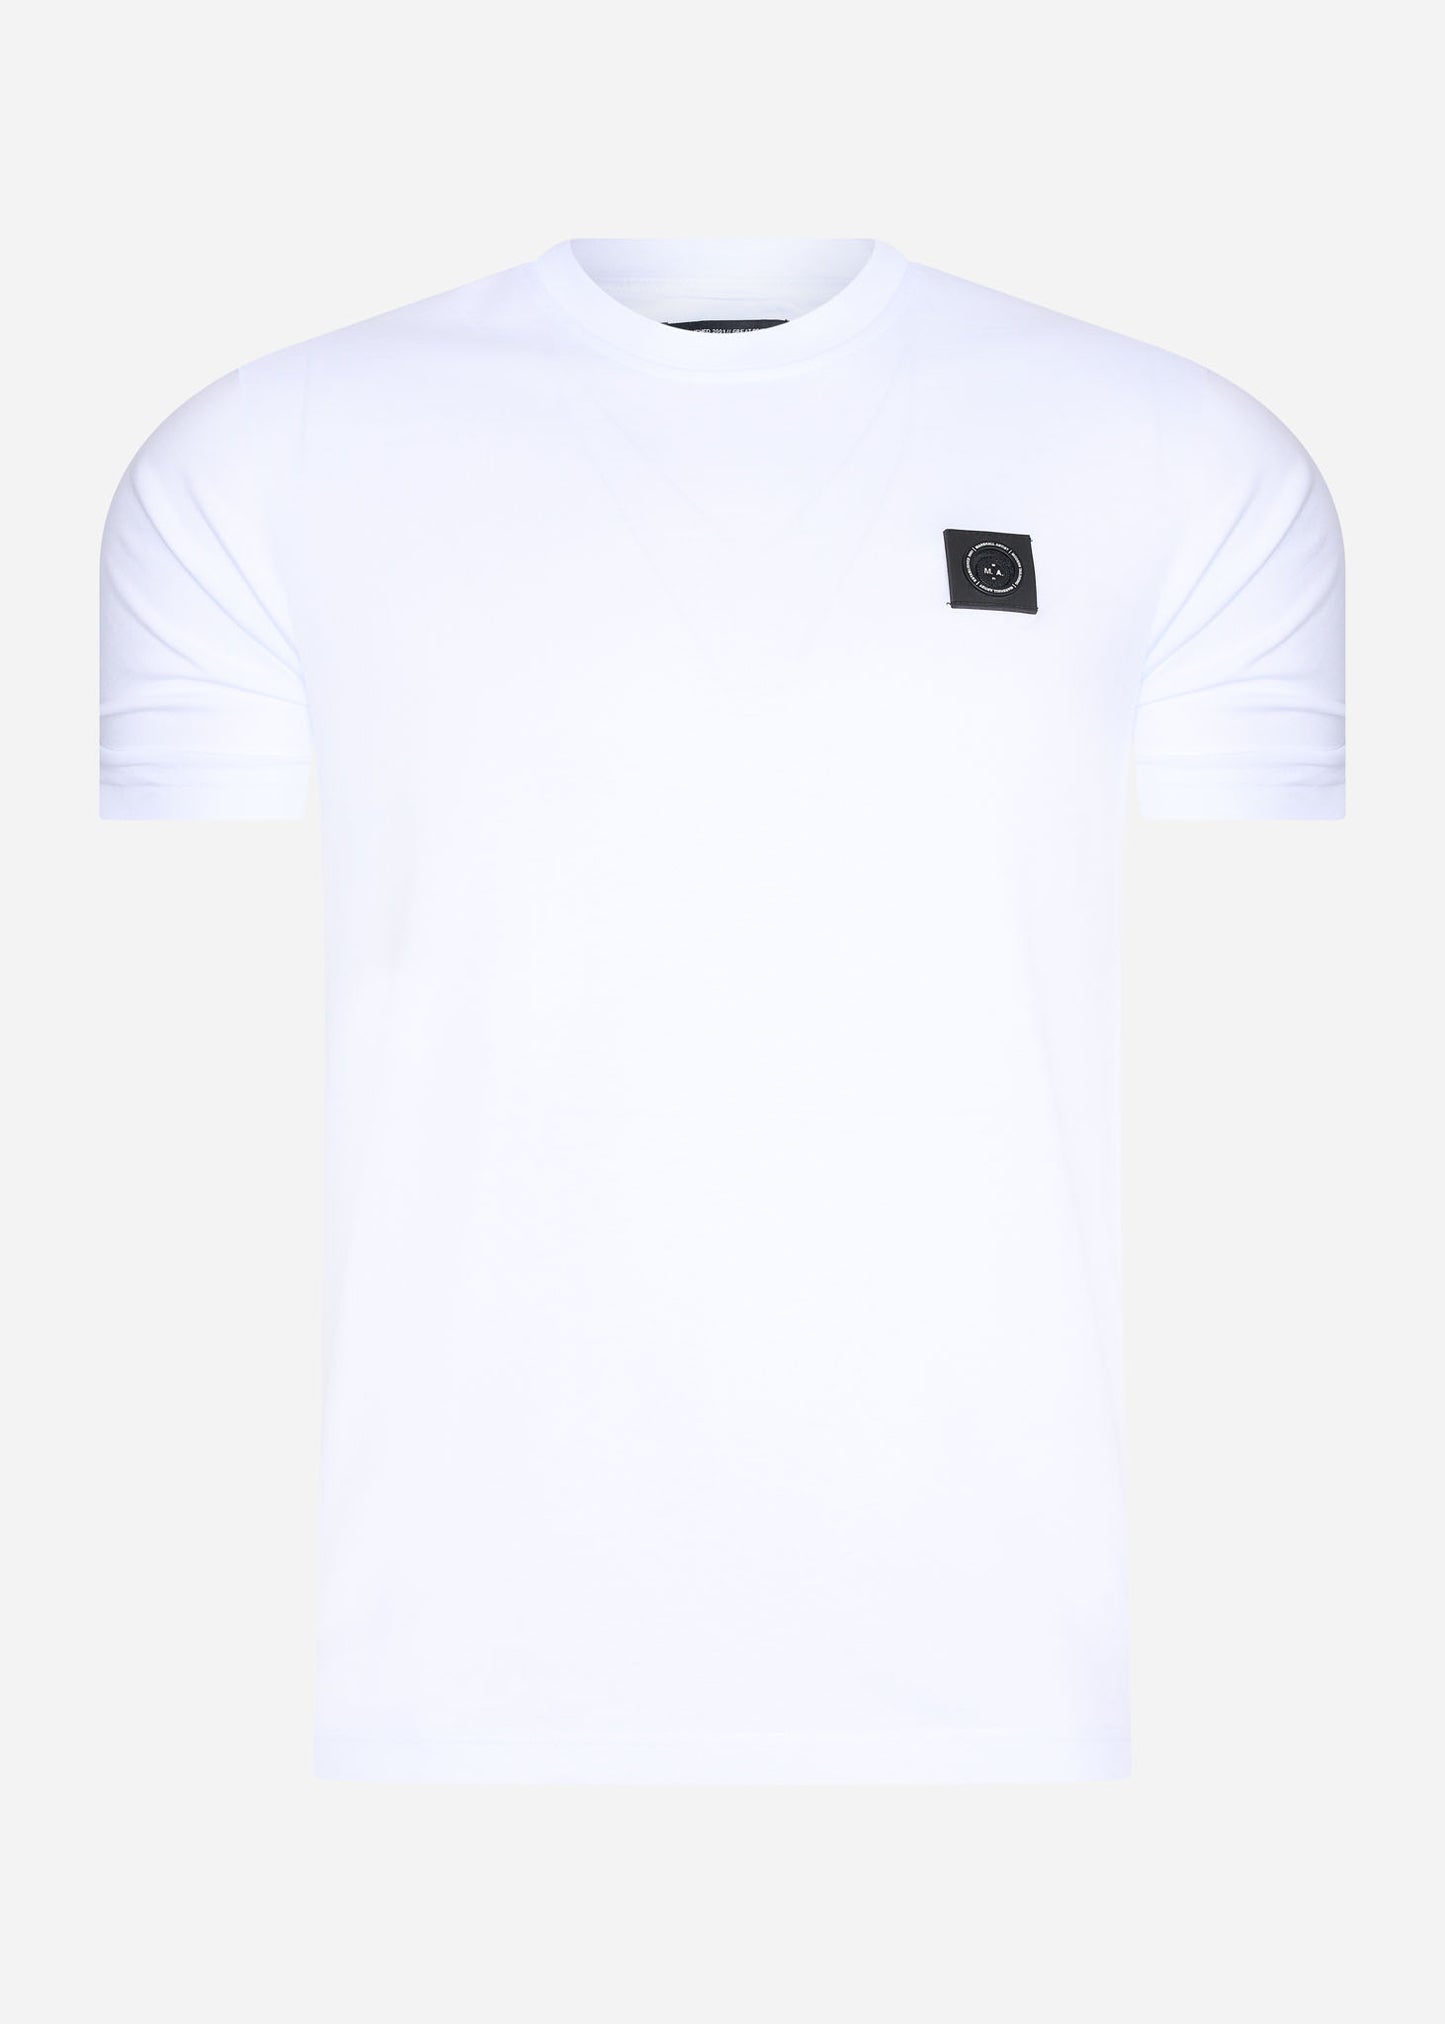 Marshall Artist t-shirt white